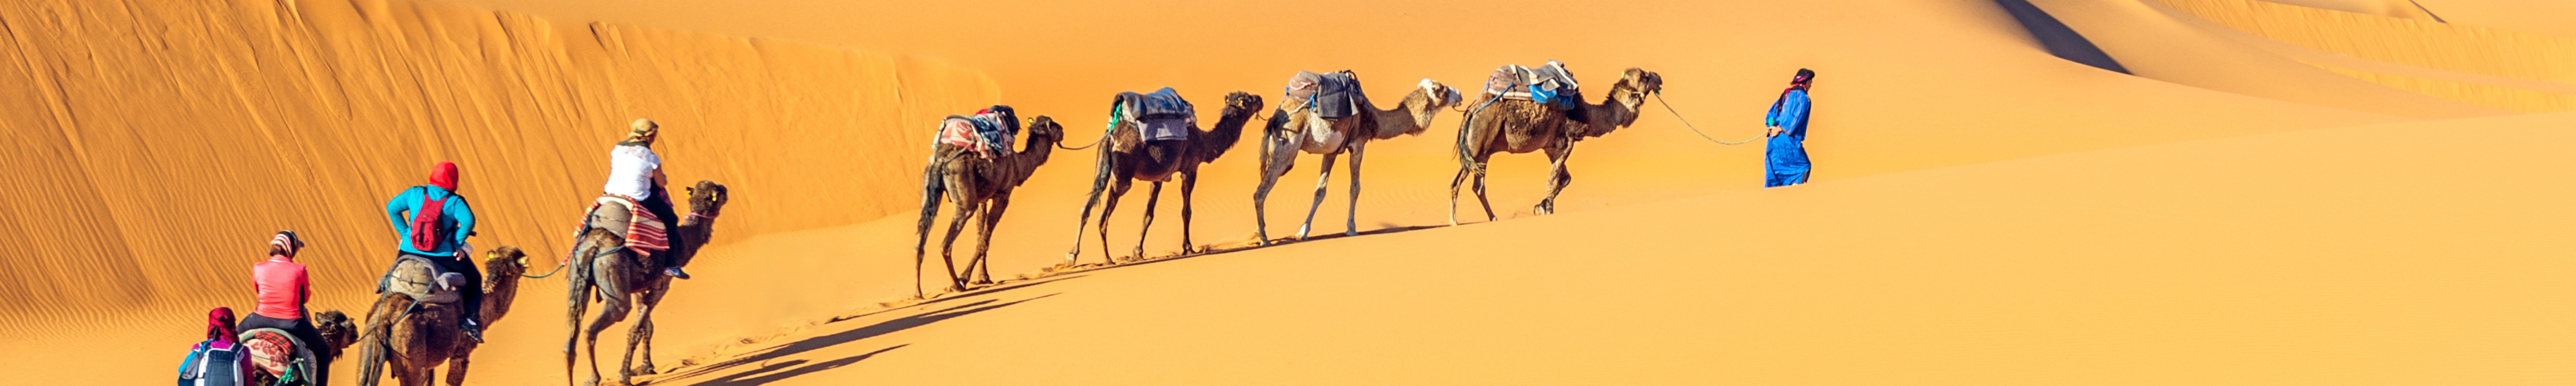 Nomader på kameler i Sahara